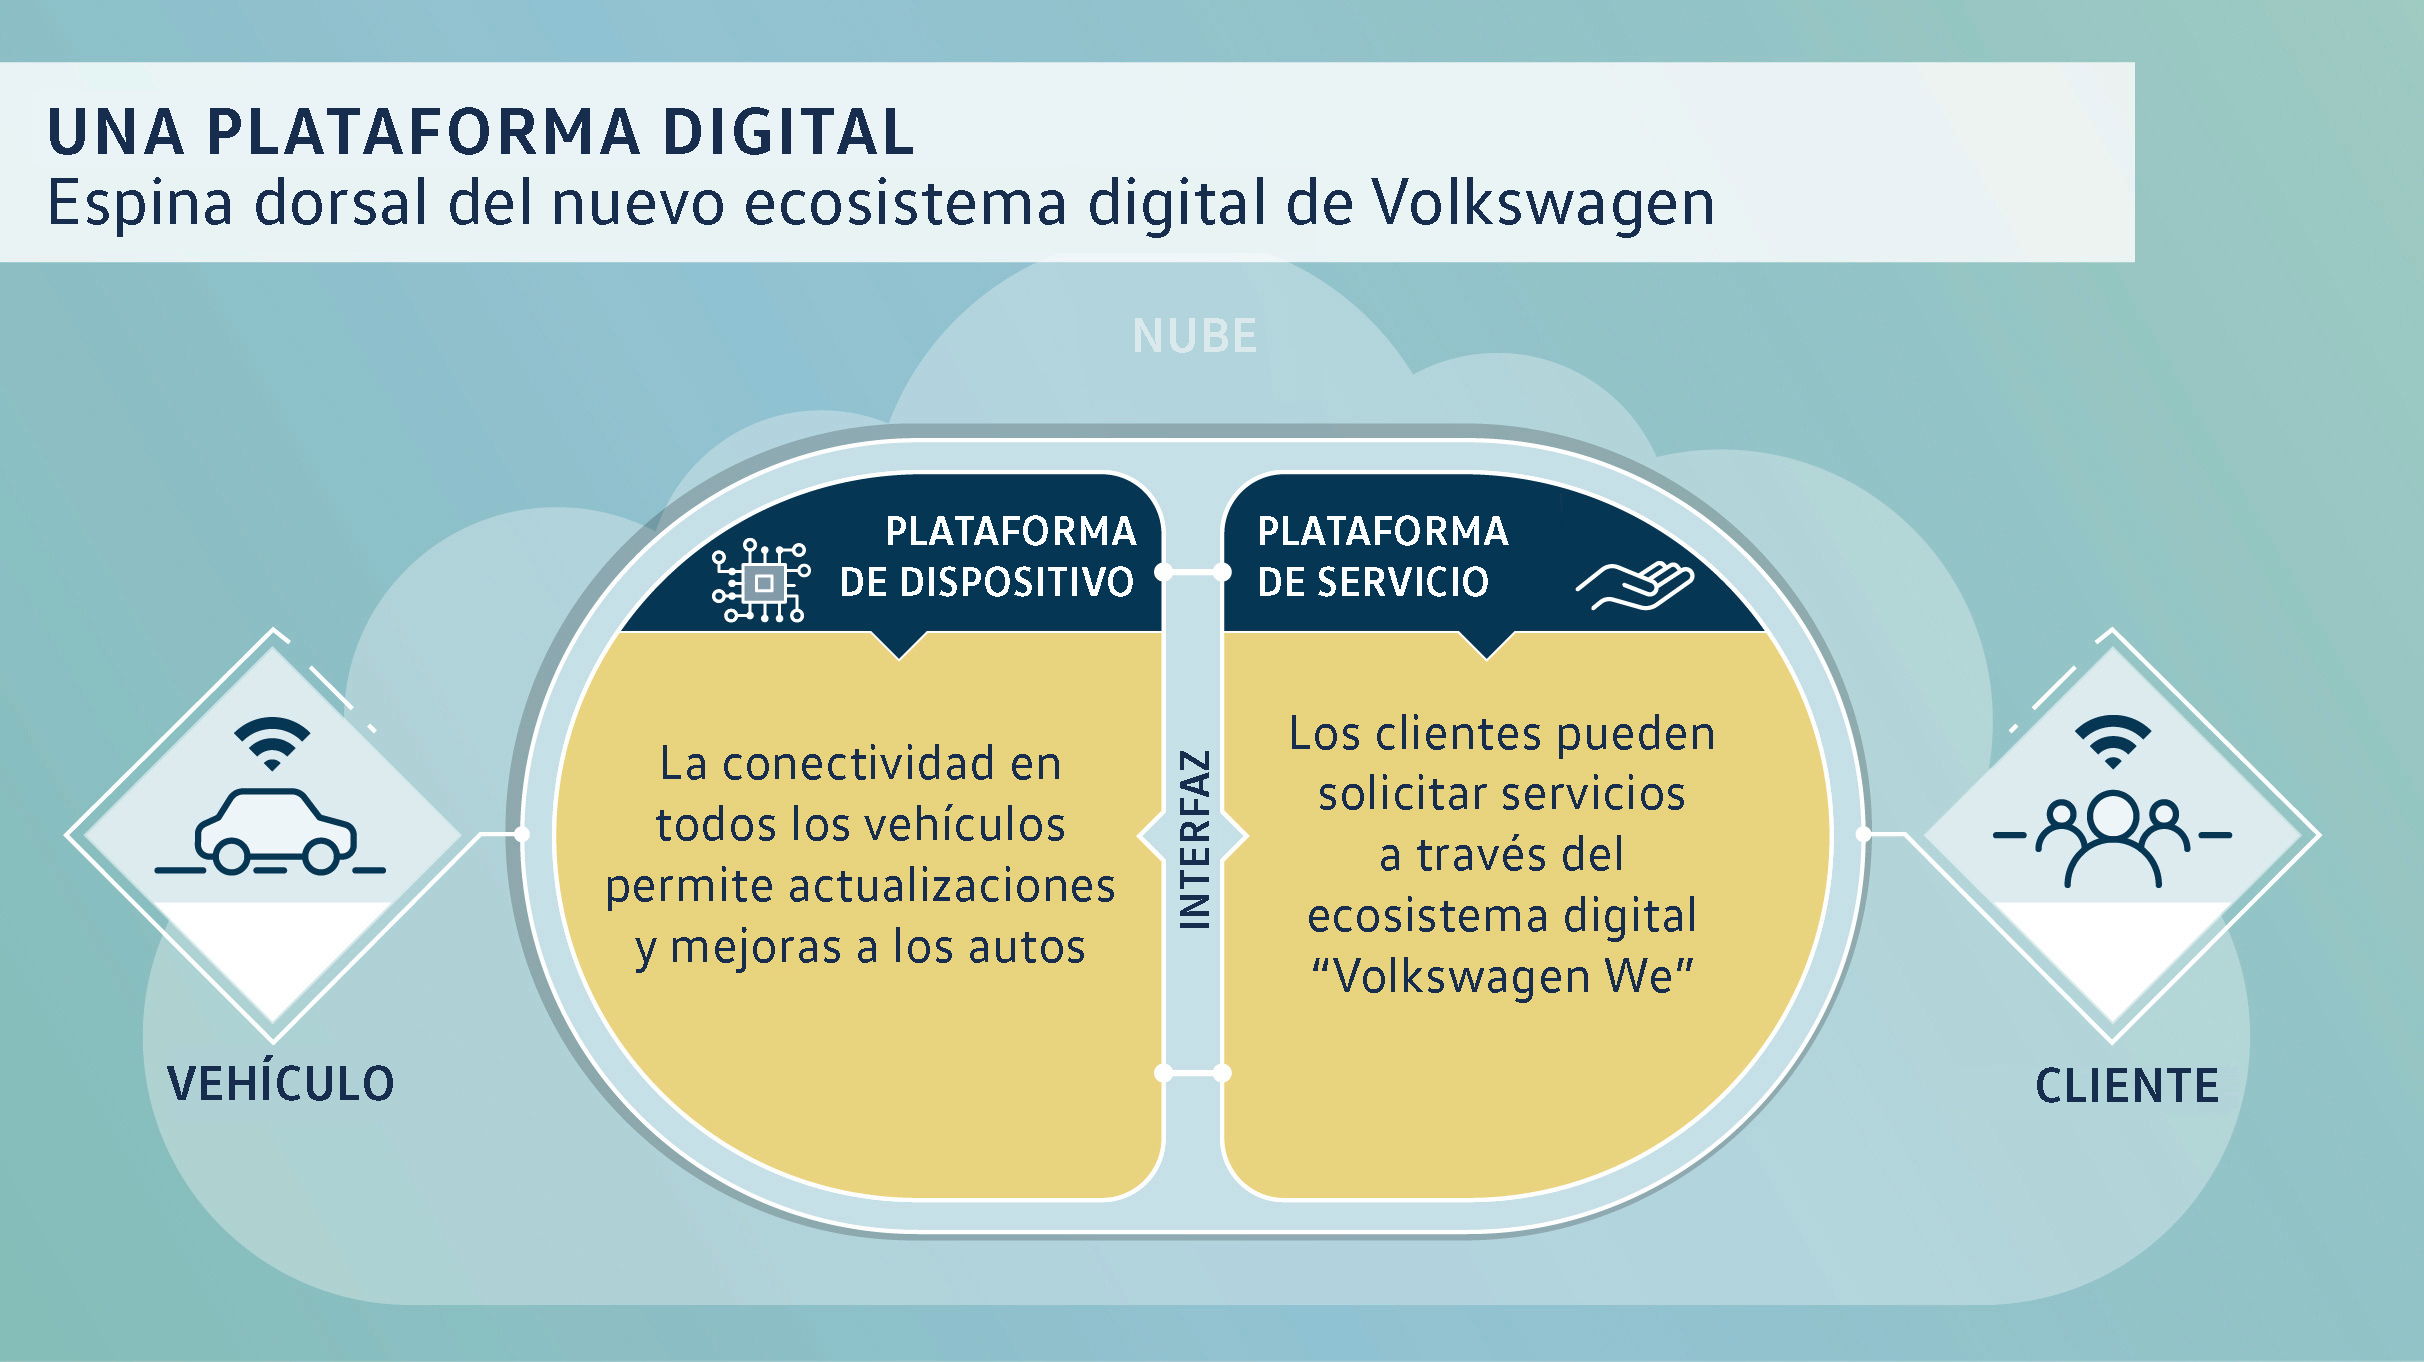 El nuevo ecosistema digital con vehículos conectados y numerosos servicios para nuestros clientes